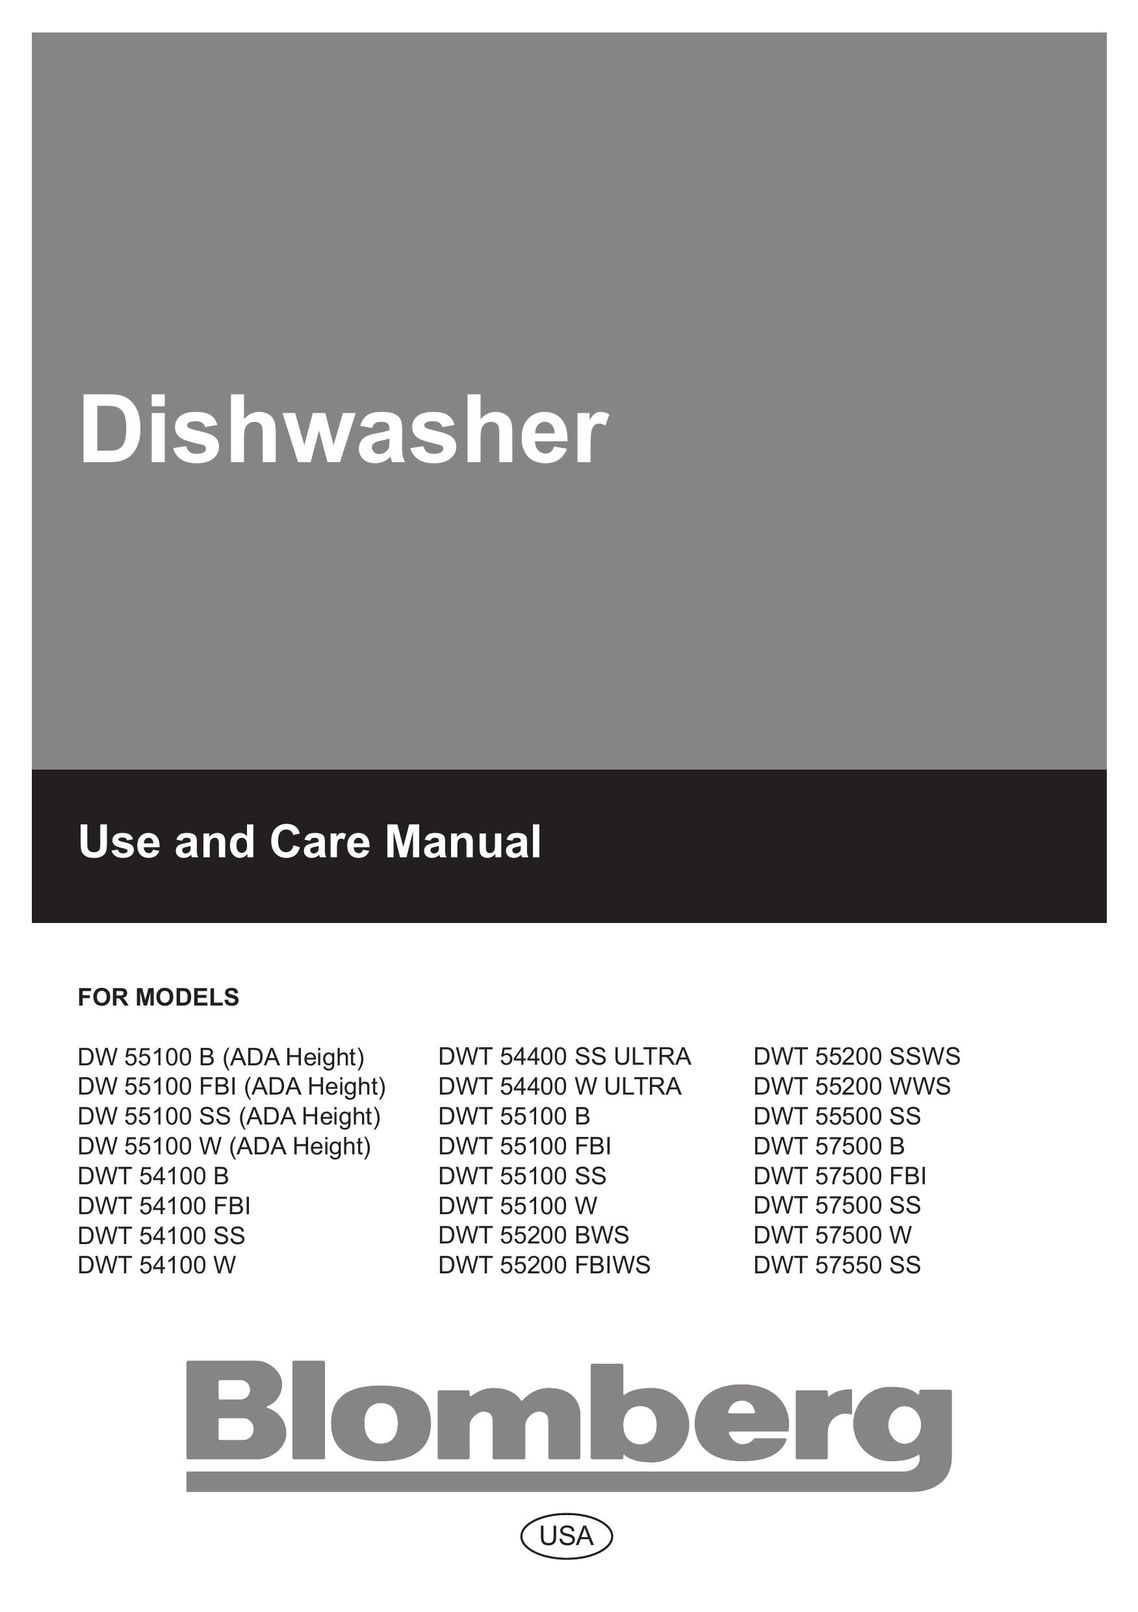 Blomberg DW 54100 FBI Dishwasher User Manual